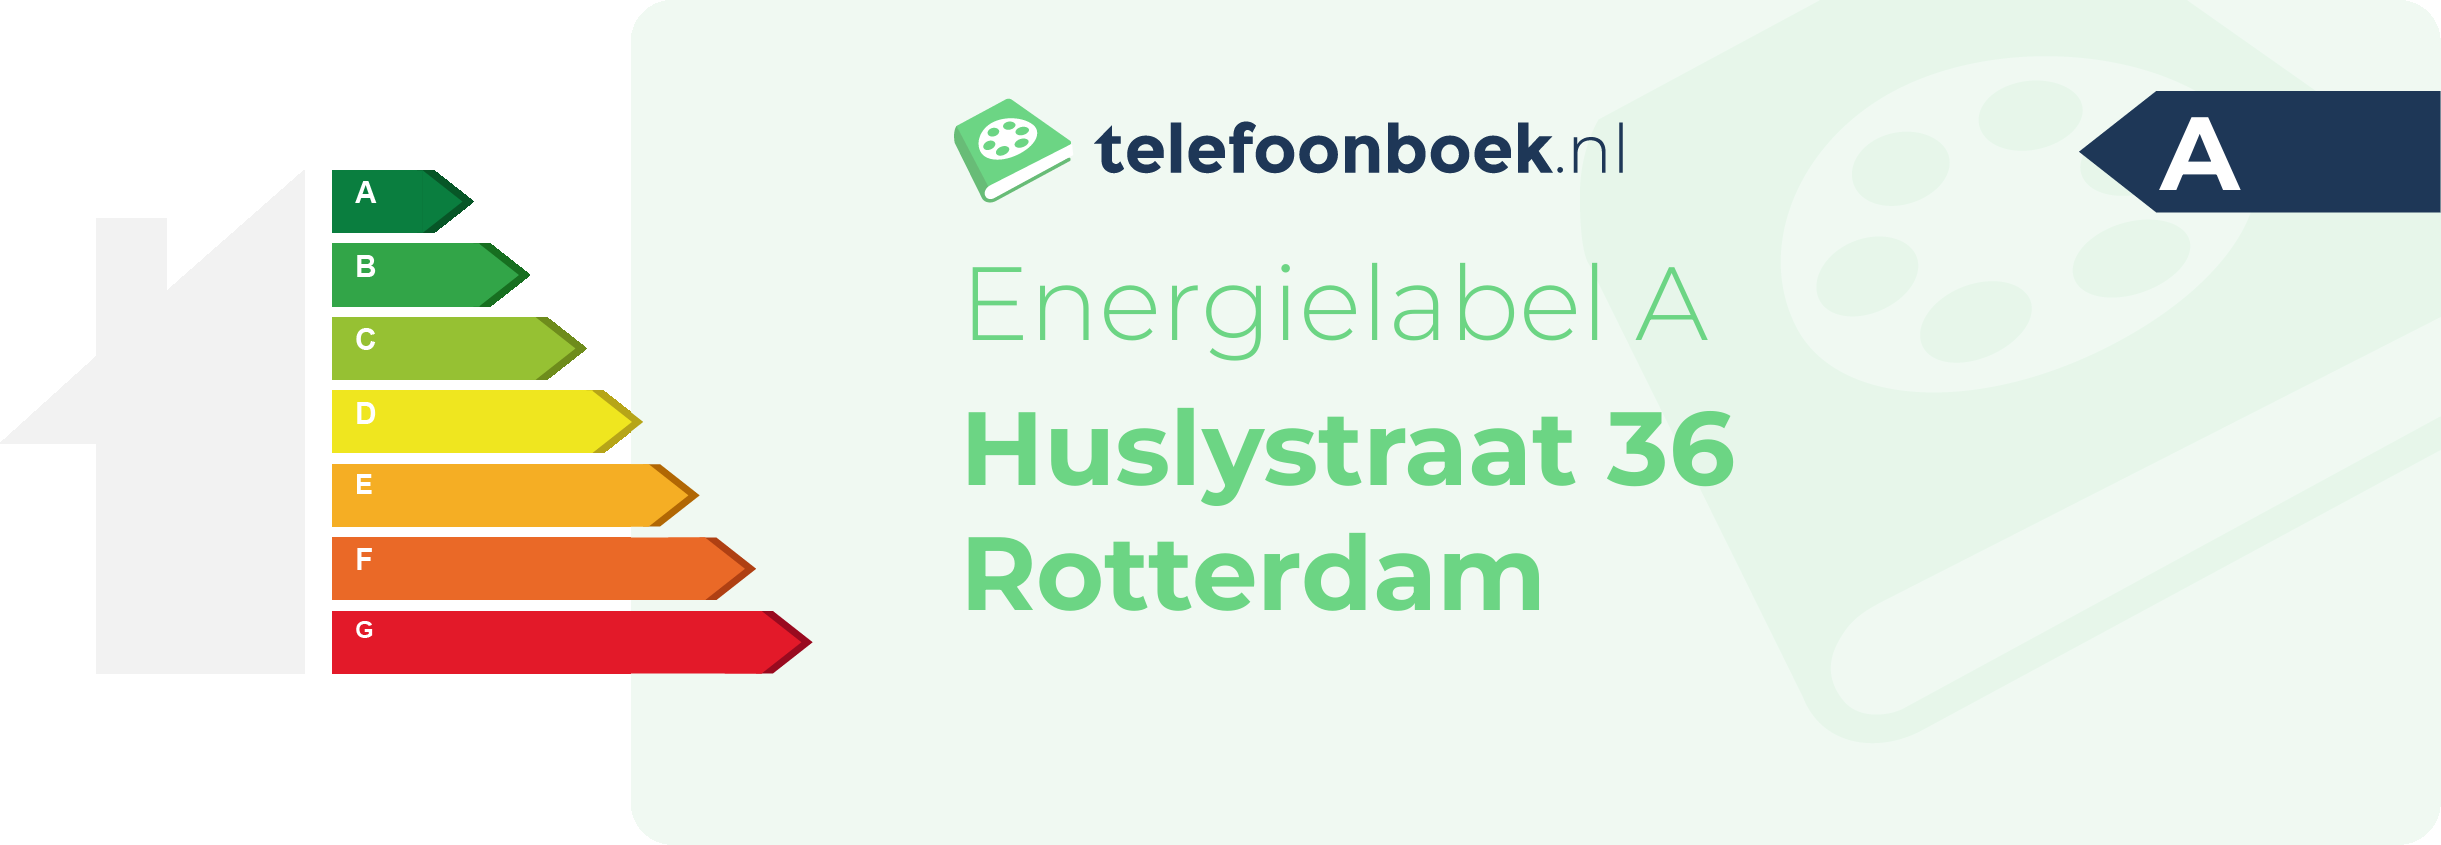 Energielabel Huslystraat 36 Rotterdam